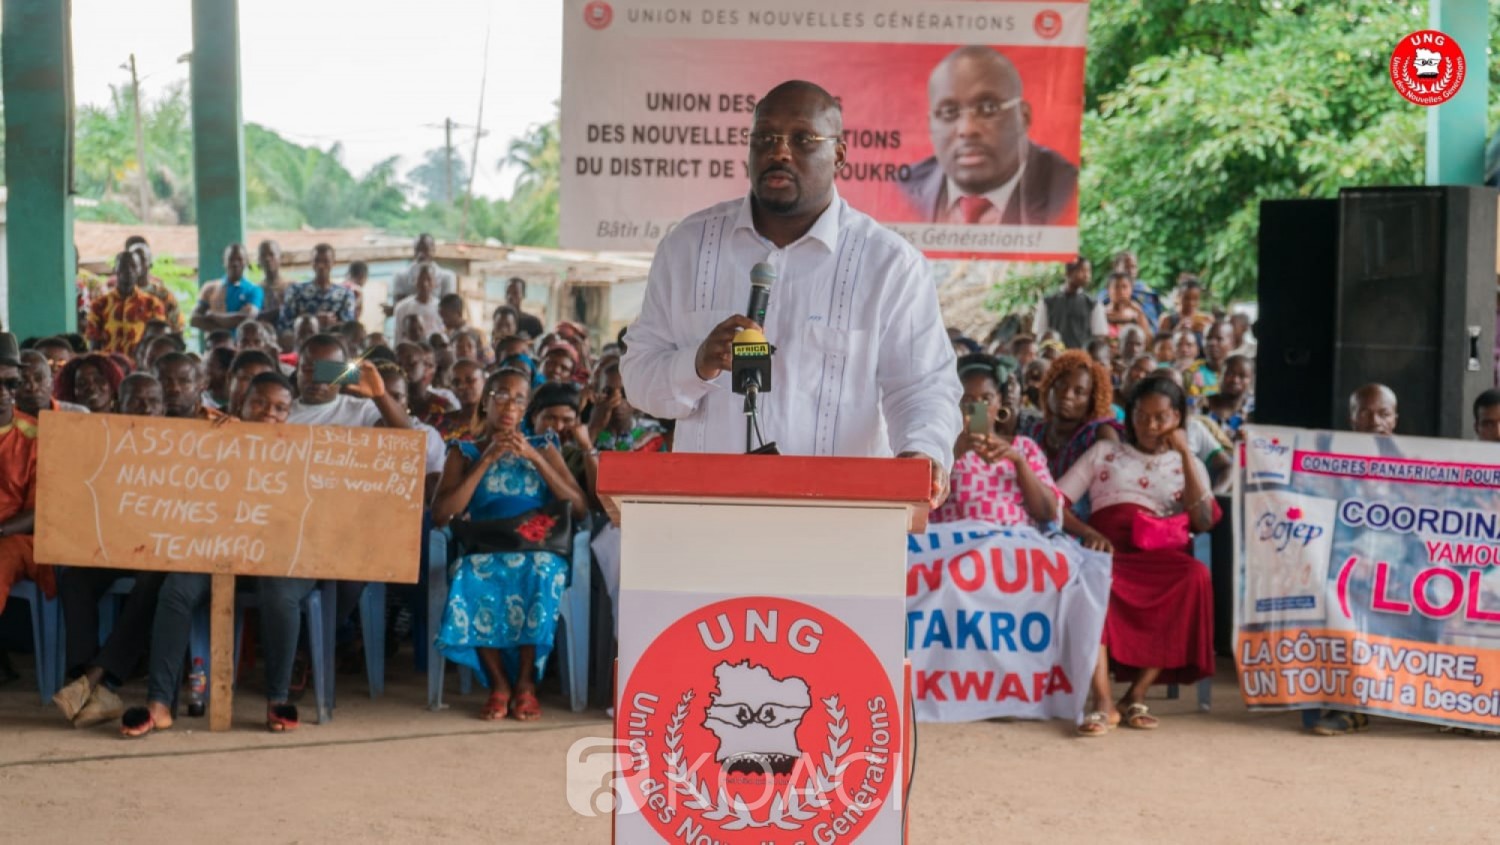 Côte d'Ivoire : Nouveau Parti annoncé par Gbagbo, l'Ung de Stéphane Kipré face à son destin le 25 septembre prochain à Yamoussoukro